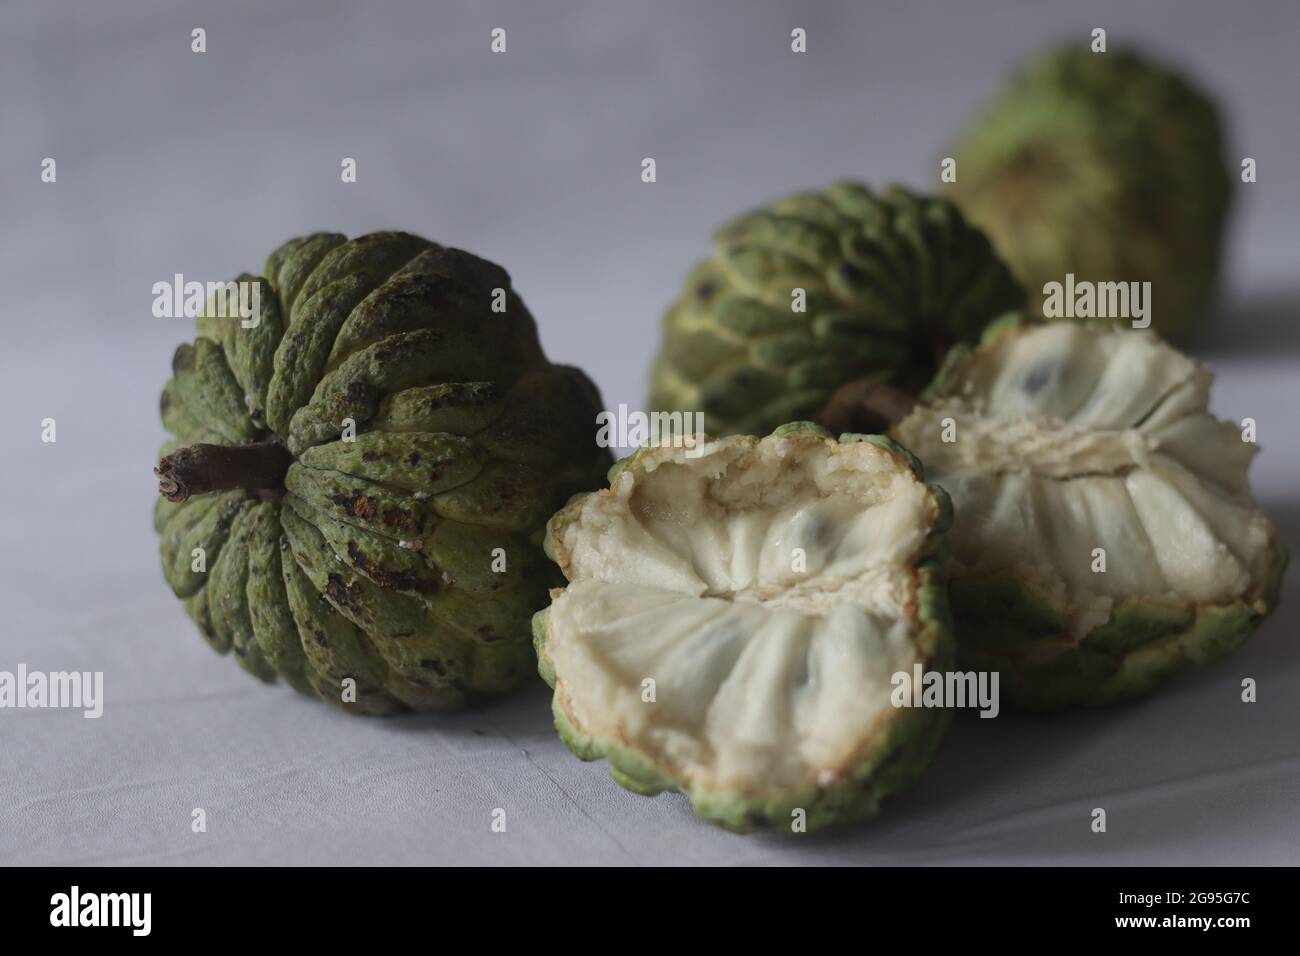 Cherimoya ist eine grüne, kegelförmige Frucht mit ledriger Haut und cremigem, süßem Fruchtfleisch. Es ist auch als Puddingapfel bekannt. Die Früchte variieren in Form, Herz Stockfoto